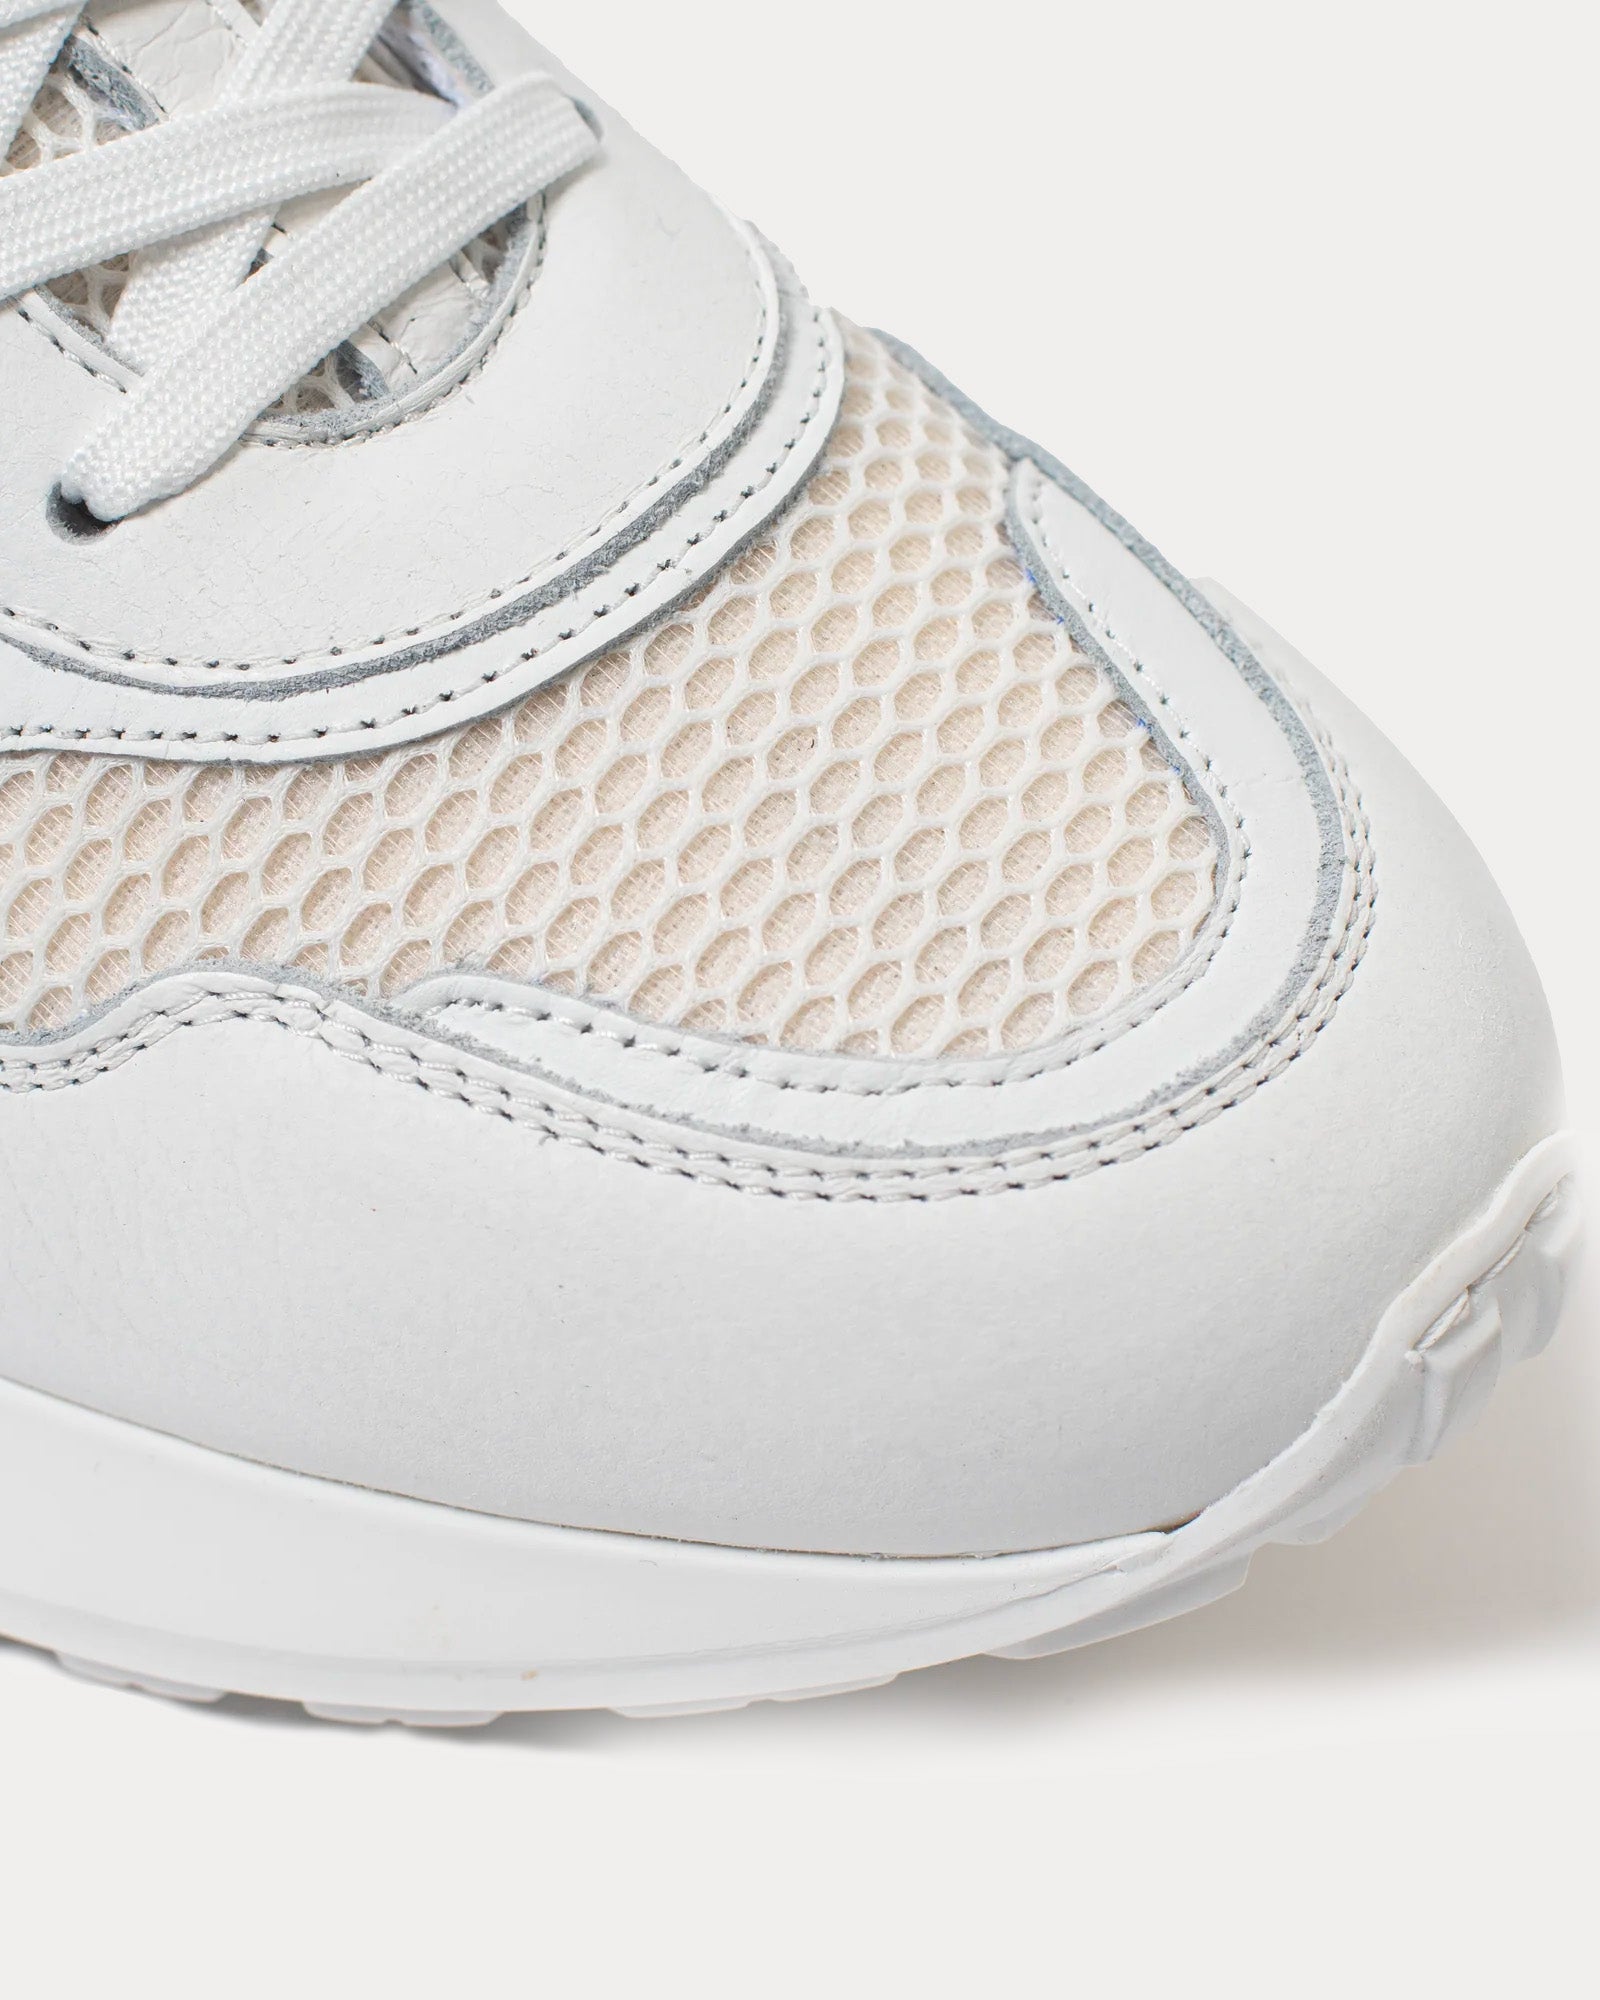 Hyphnt - Road Runner Blanco White Low Top Sneakers